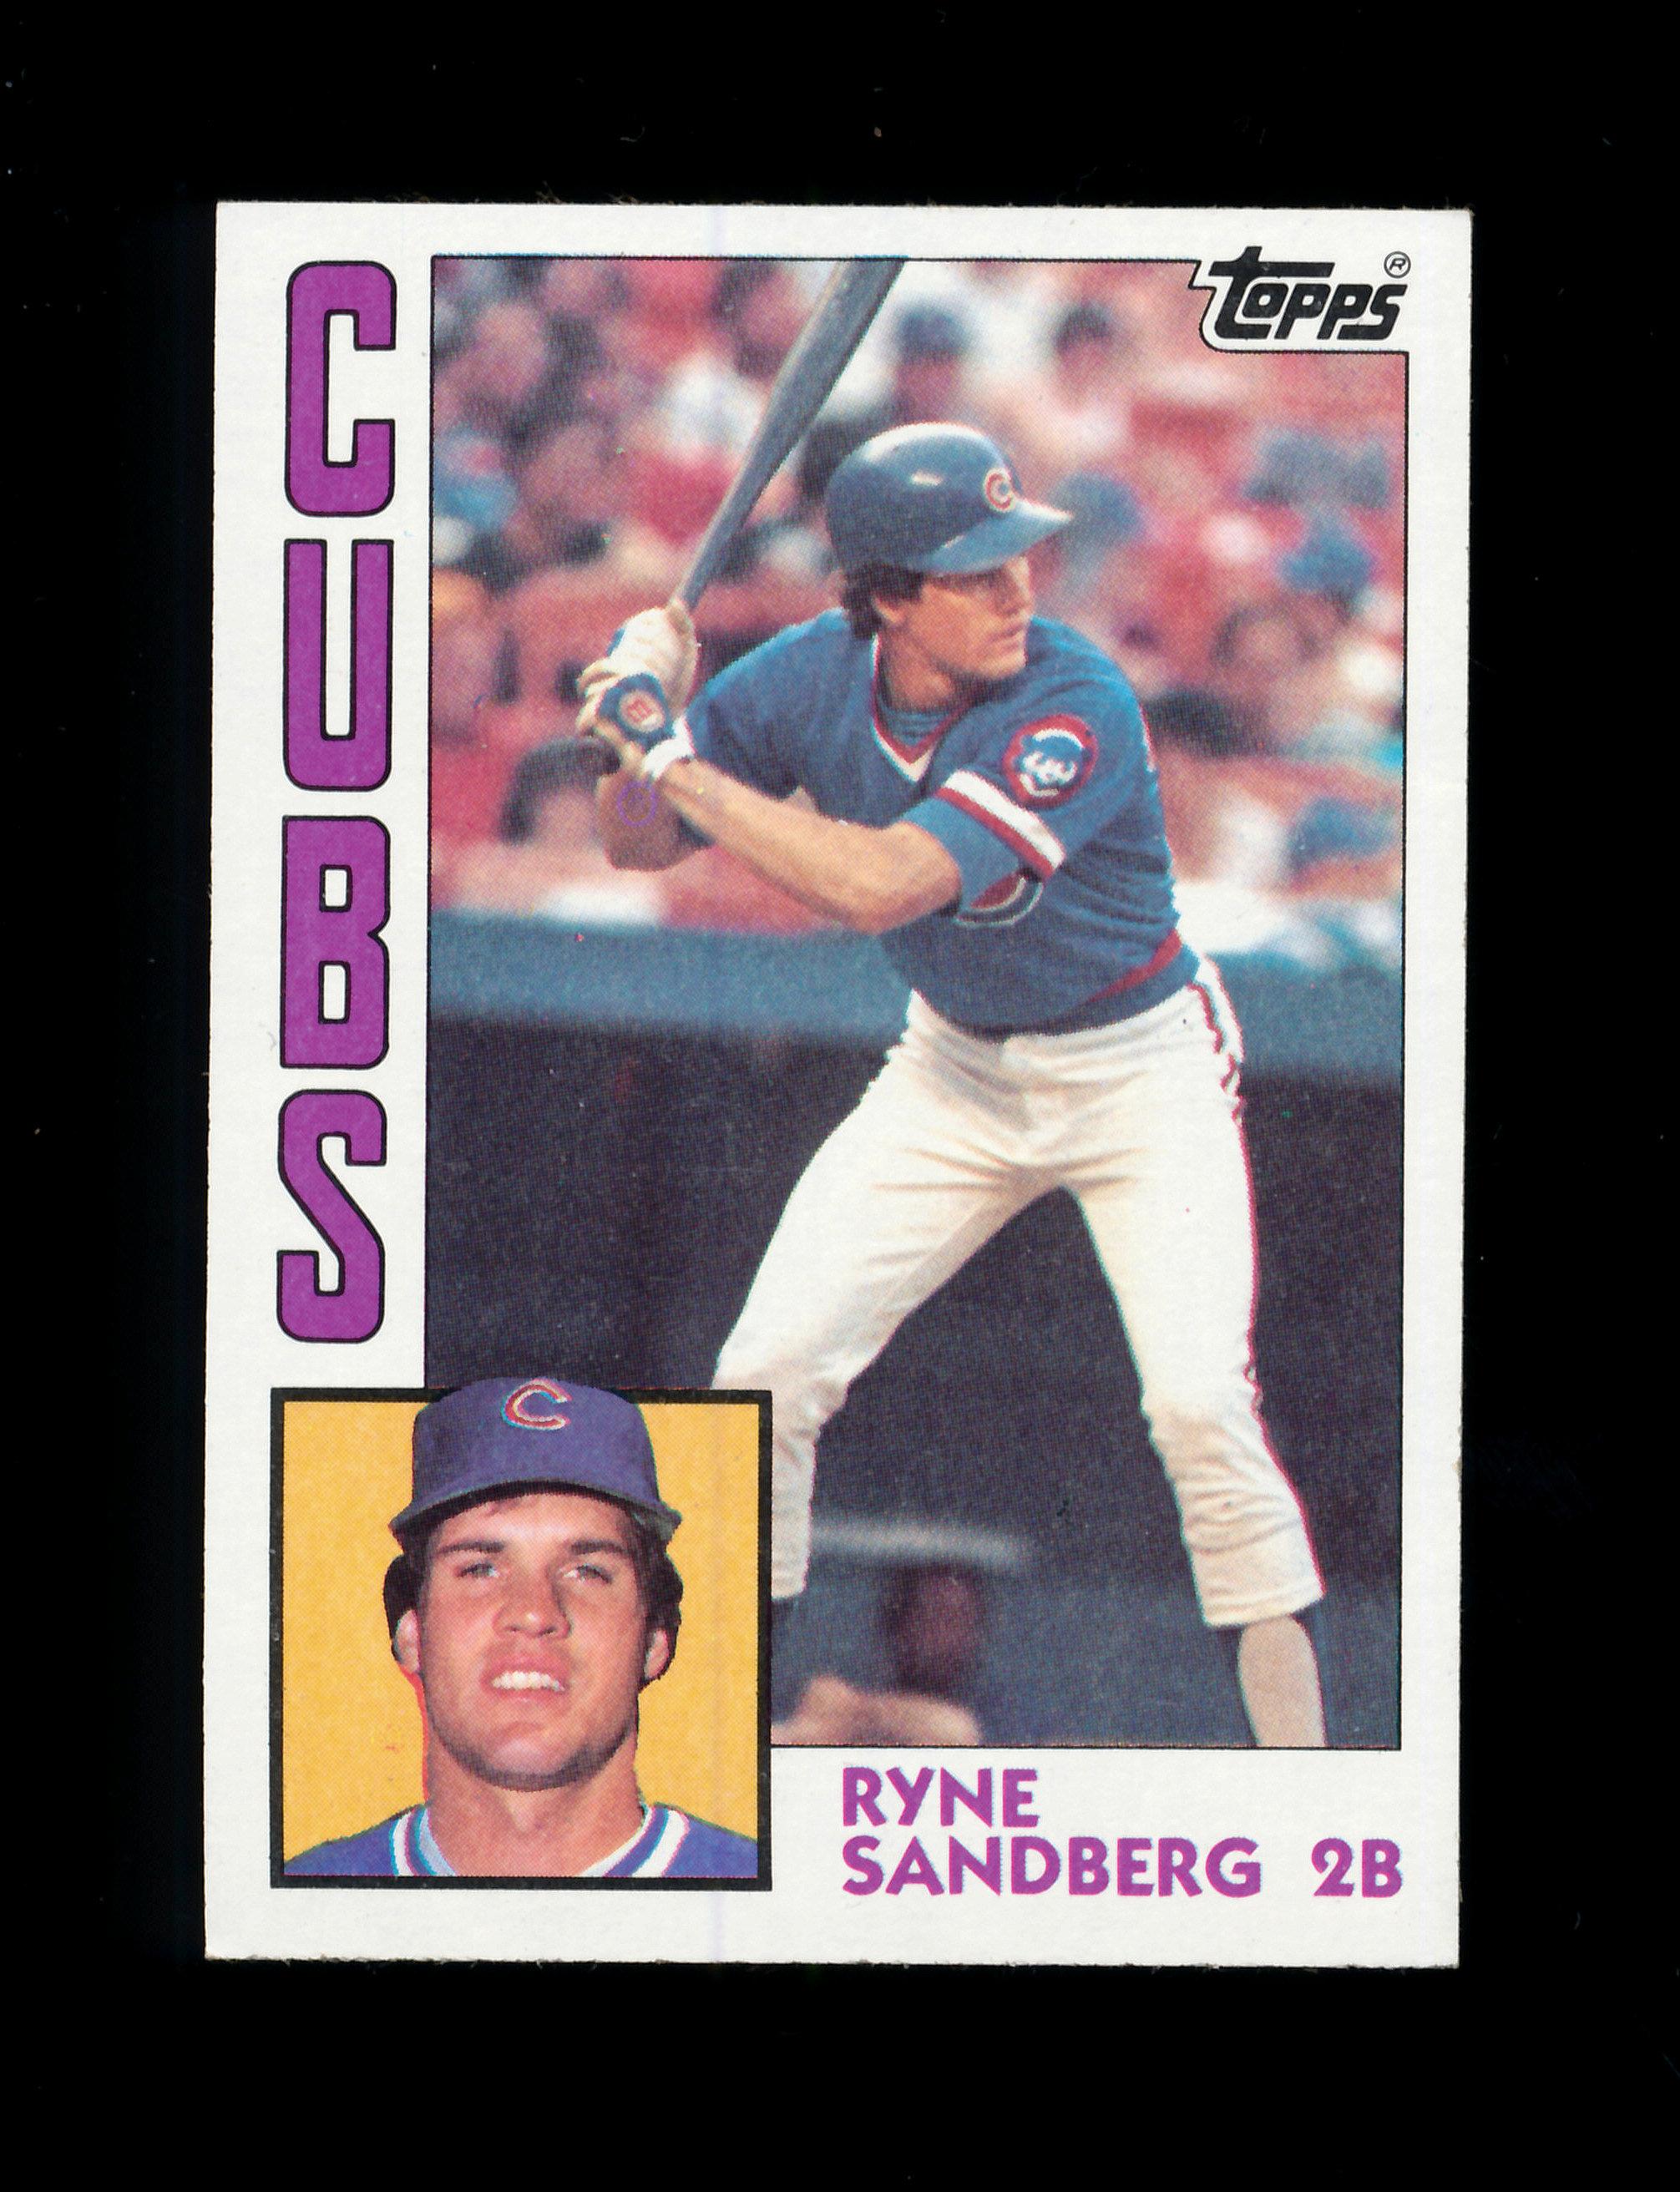 1984 Topps Baseball Card #596 Hall of Famer Ryne Sandberg Chicgo Cubs. NM t